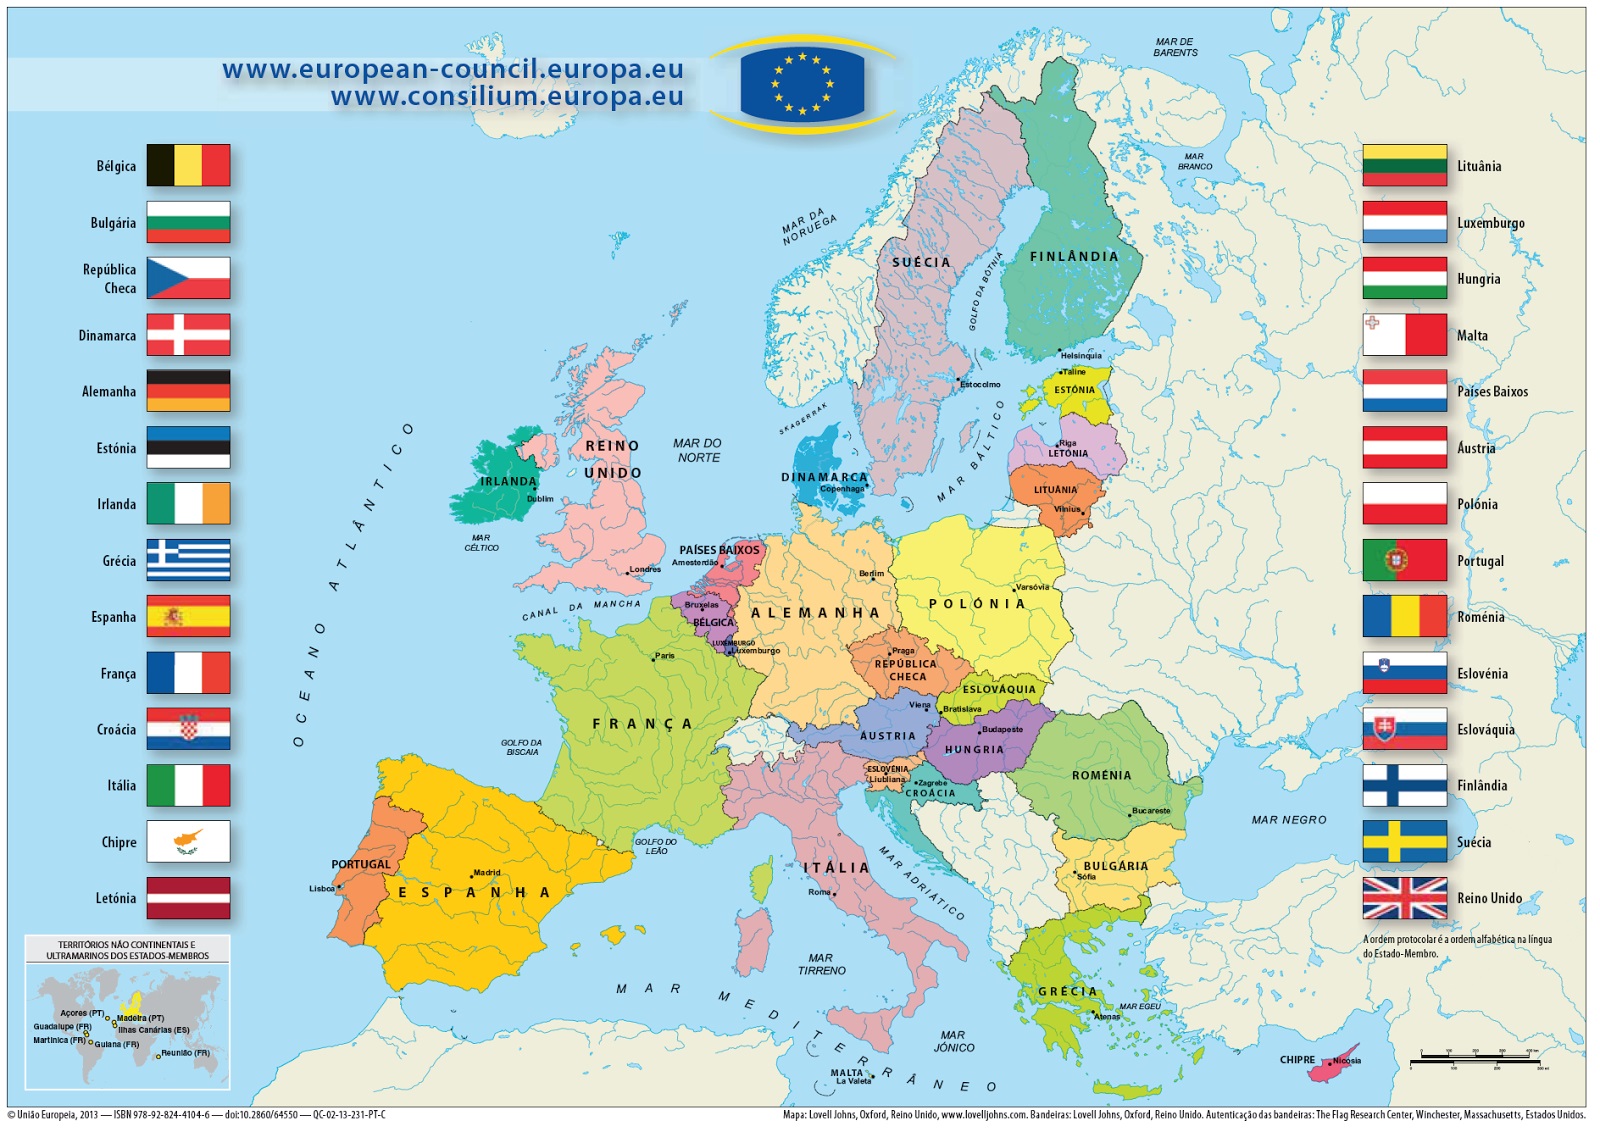 De Rerum Natura: O PIB ATRIBUÍDO À EDUCAÇÃO NOS PAÍSES DA UNIÃO EUROPEIA